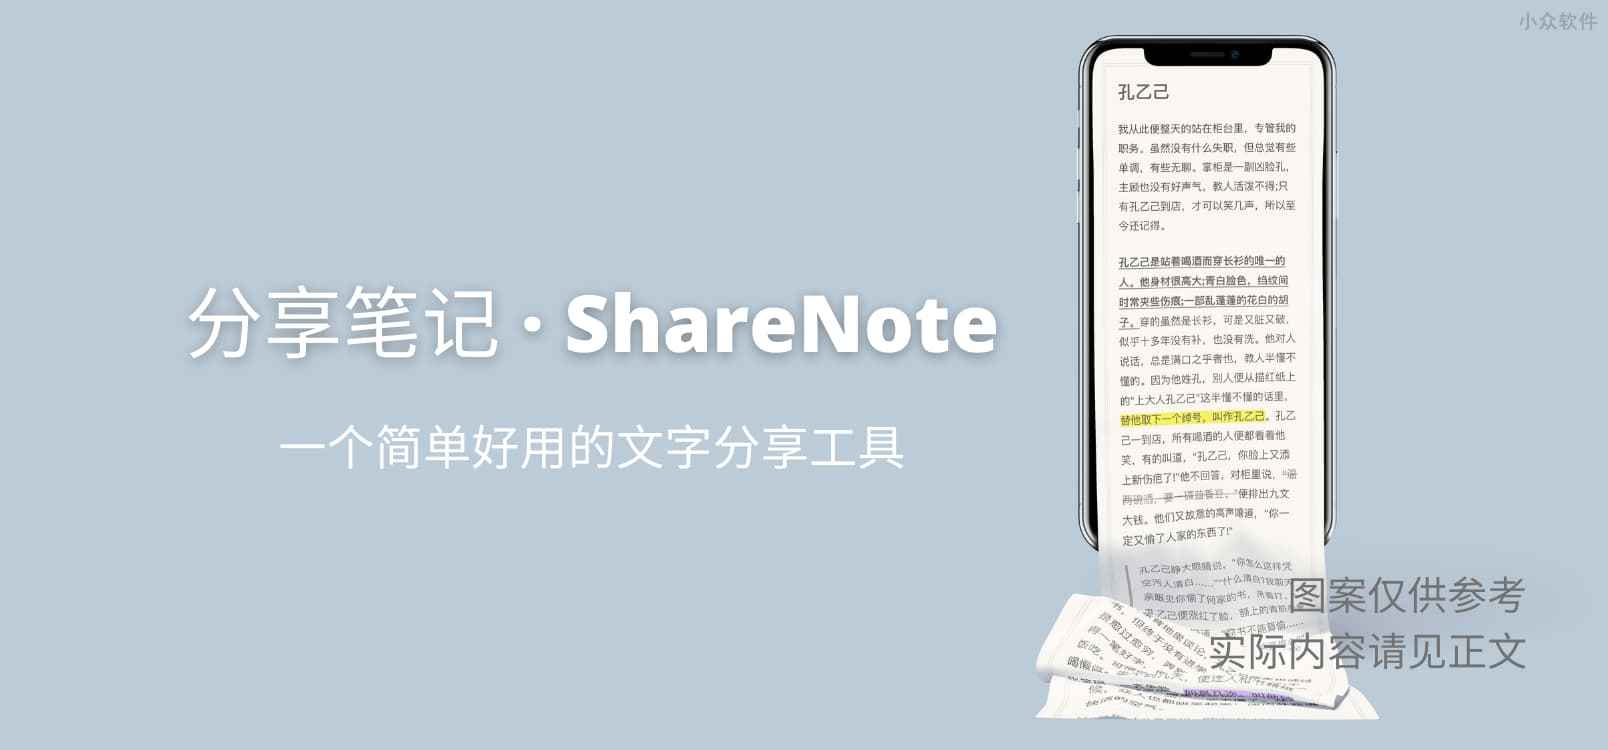 分享笔记 · ShareNote - 一个简单好用的文字分享工具